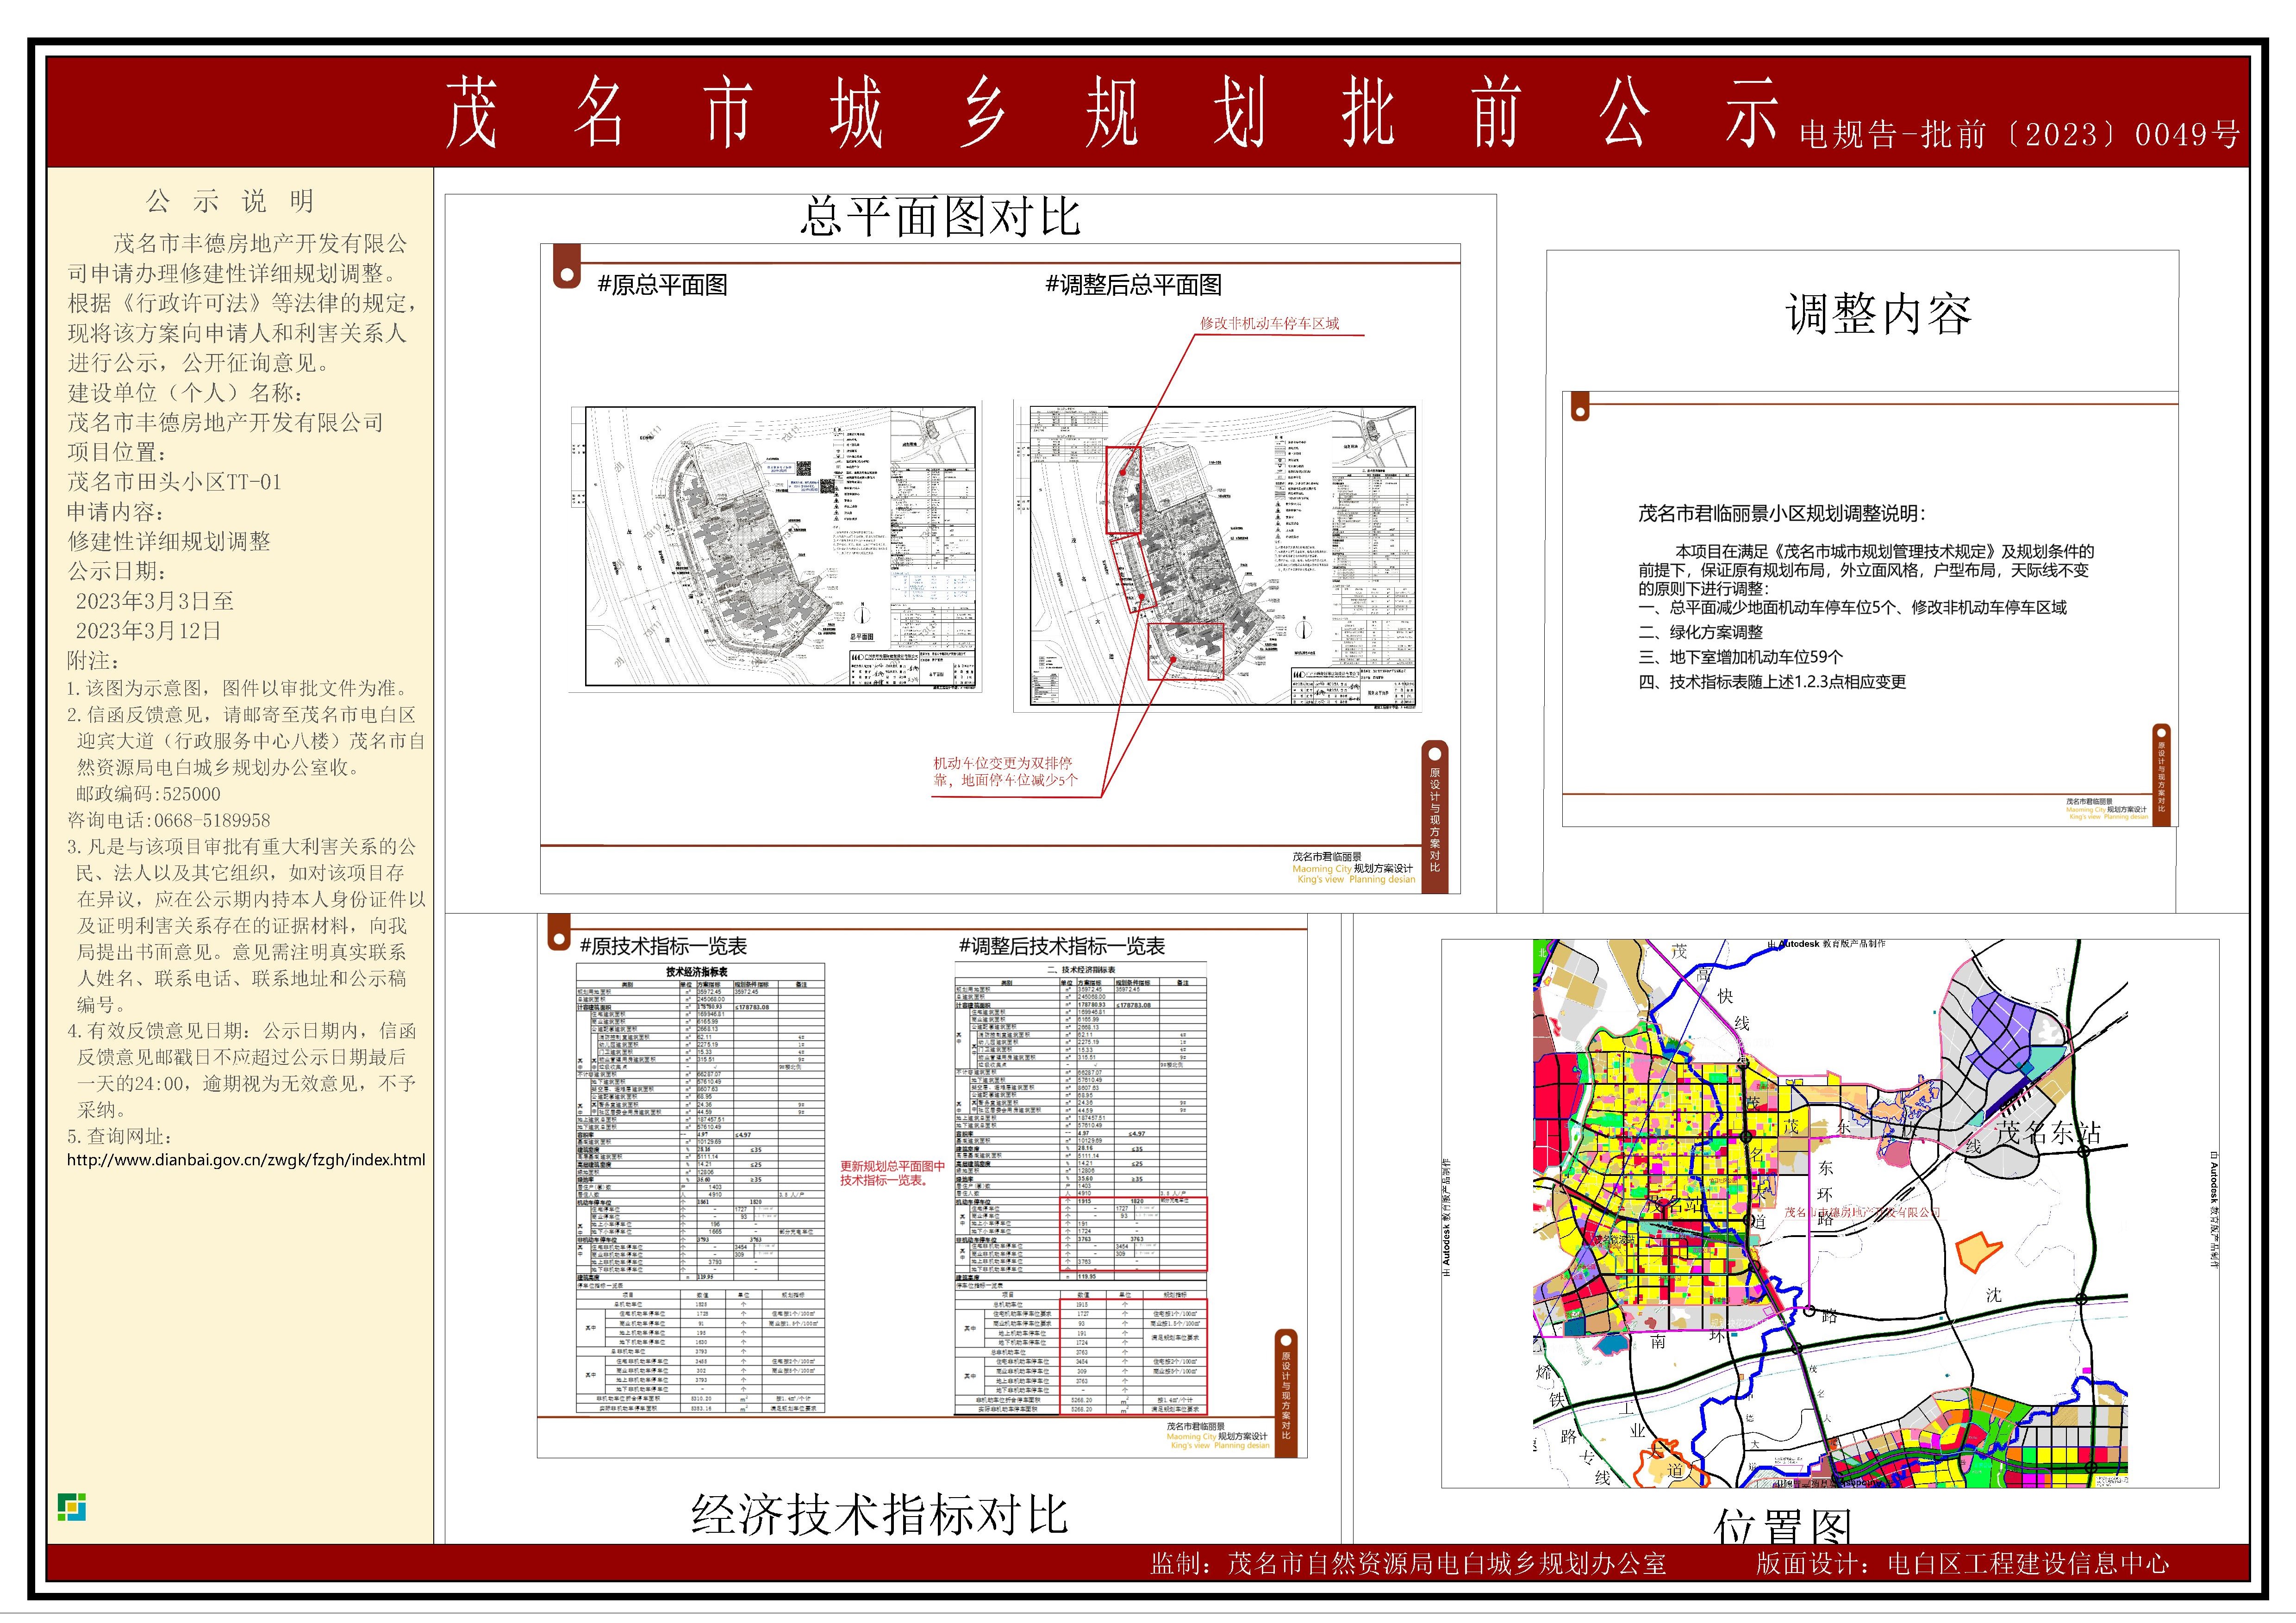 茂名市丰德房地产开发有限公司修建性详细规划调整批前公示.jpg